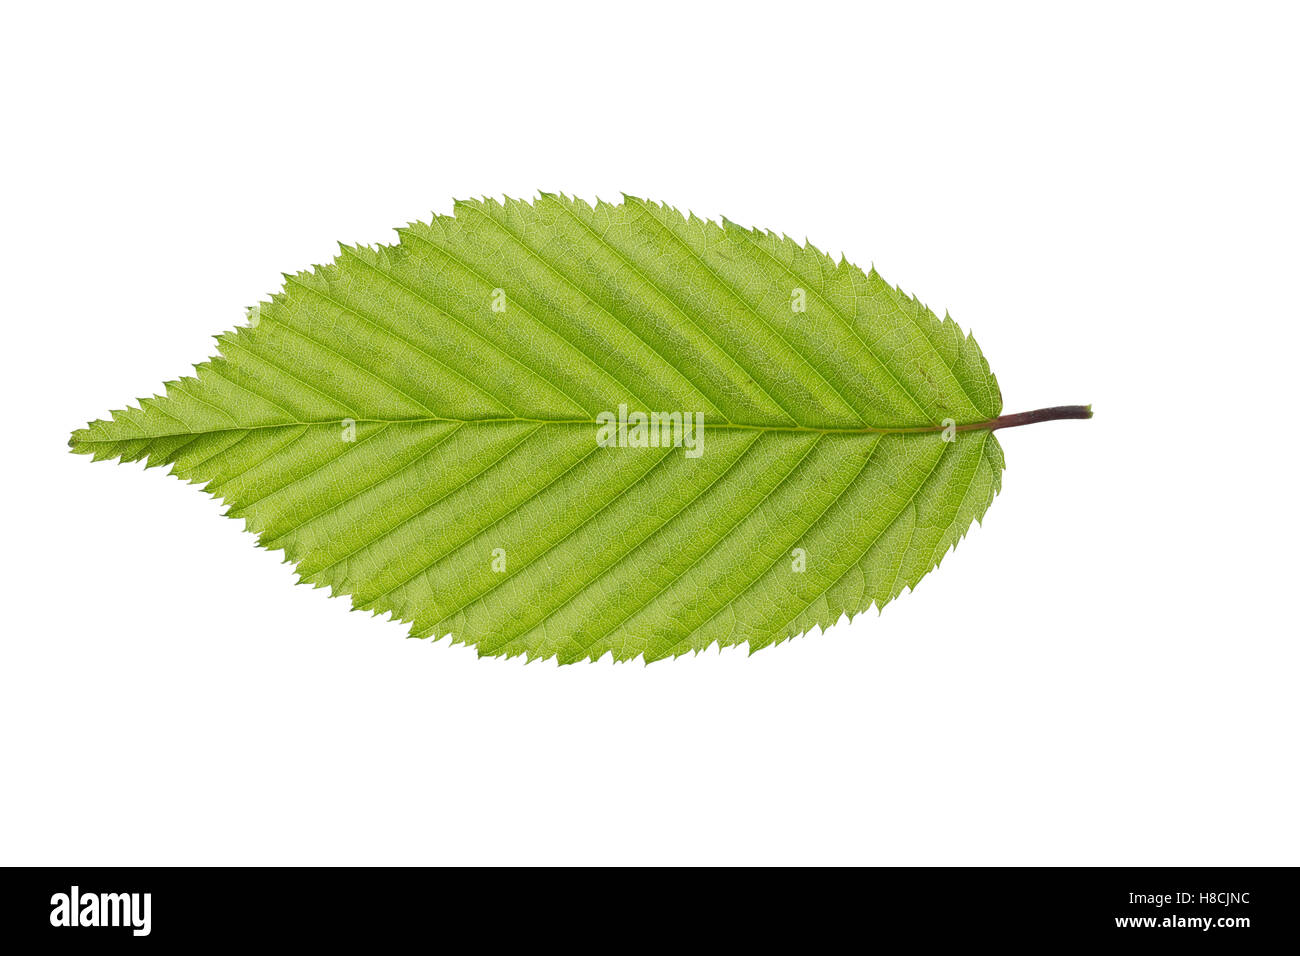 Hainbuche, Hain-Buche, Weißbuche, Weissbuche, Carpinus betulus, Common Hornbeam, Charme commun, Charmille. Blatt, Blätter, leaf, Stock Photo